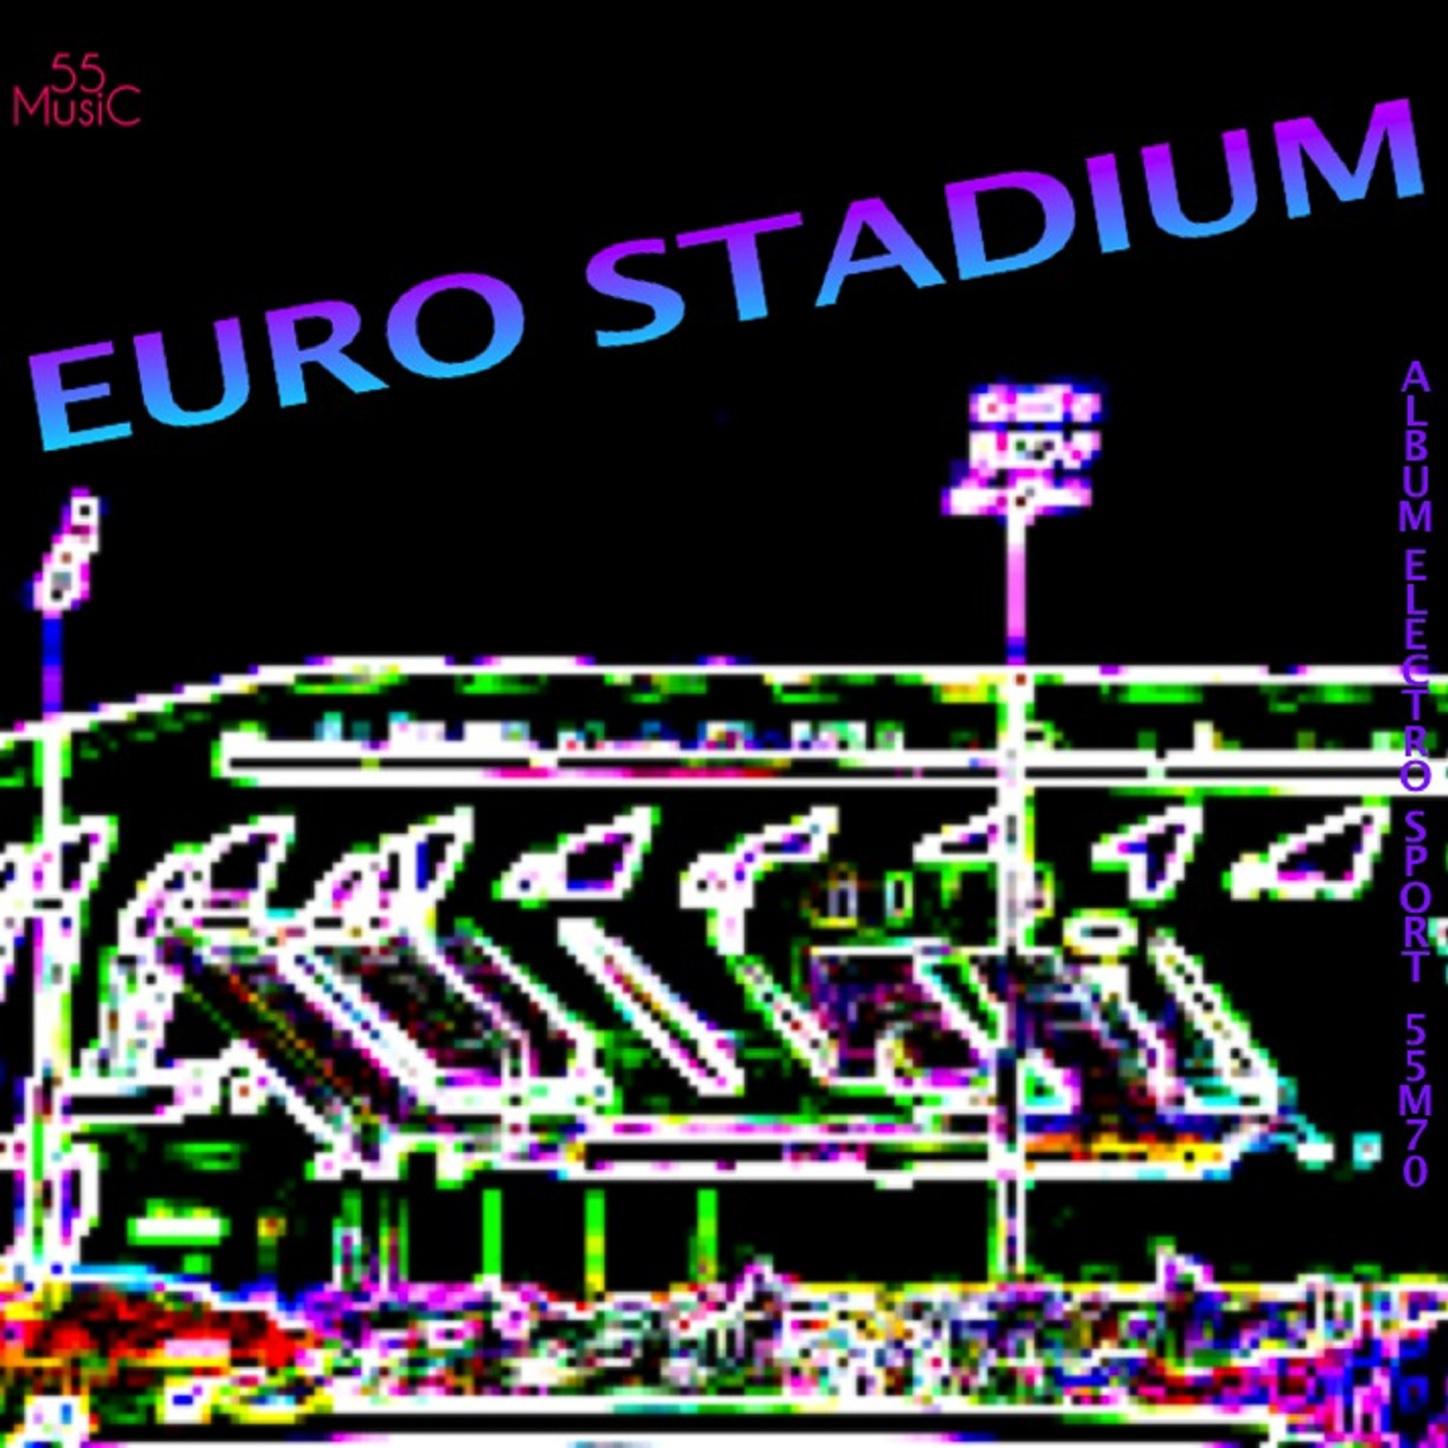 Euro Stadium